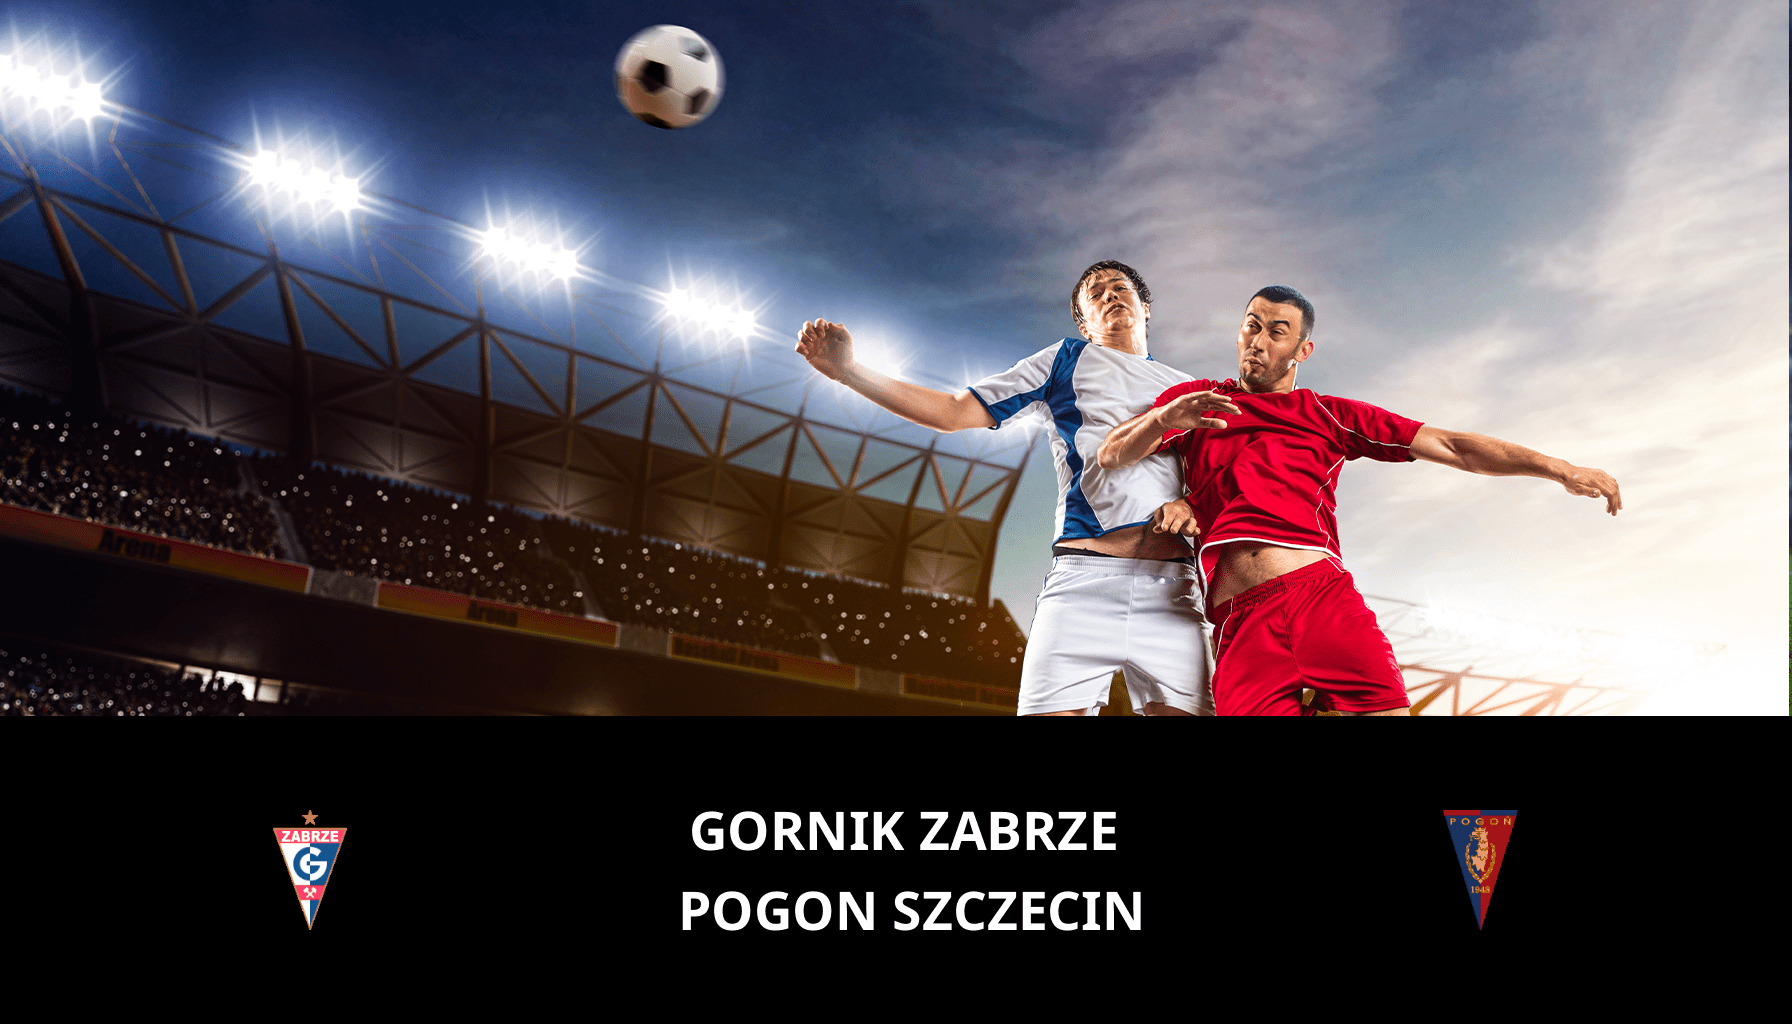 Prediction for Gornik Zabrze VS Pogon Szczecin on 01/12/2023 Analysis of the match